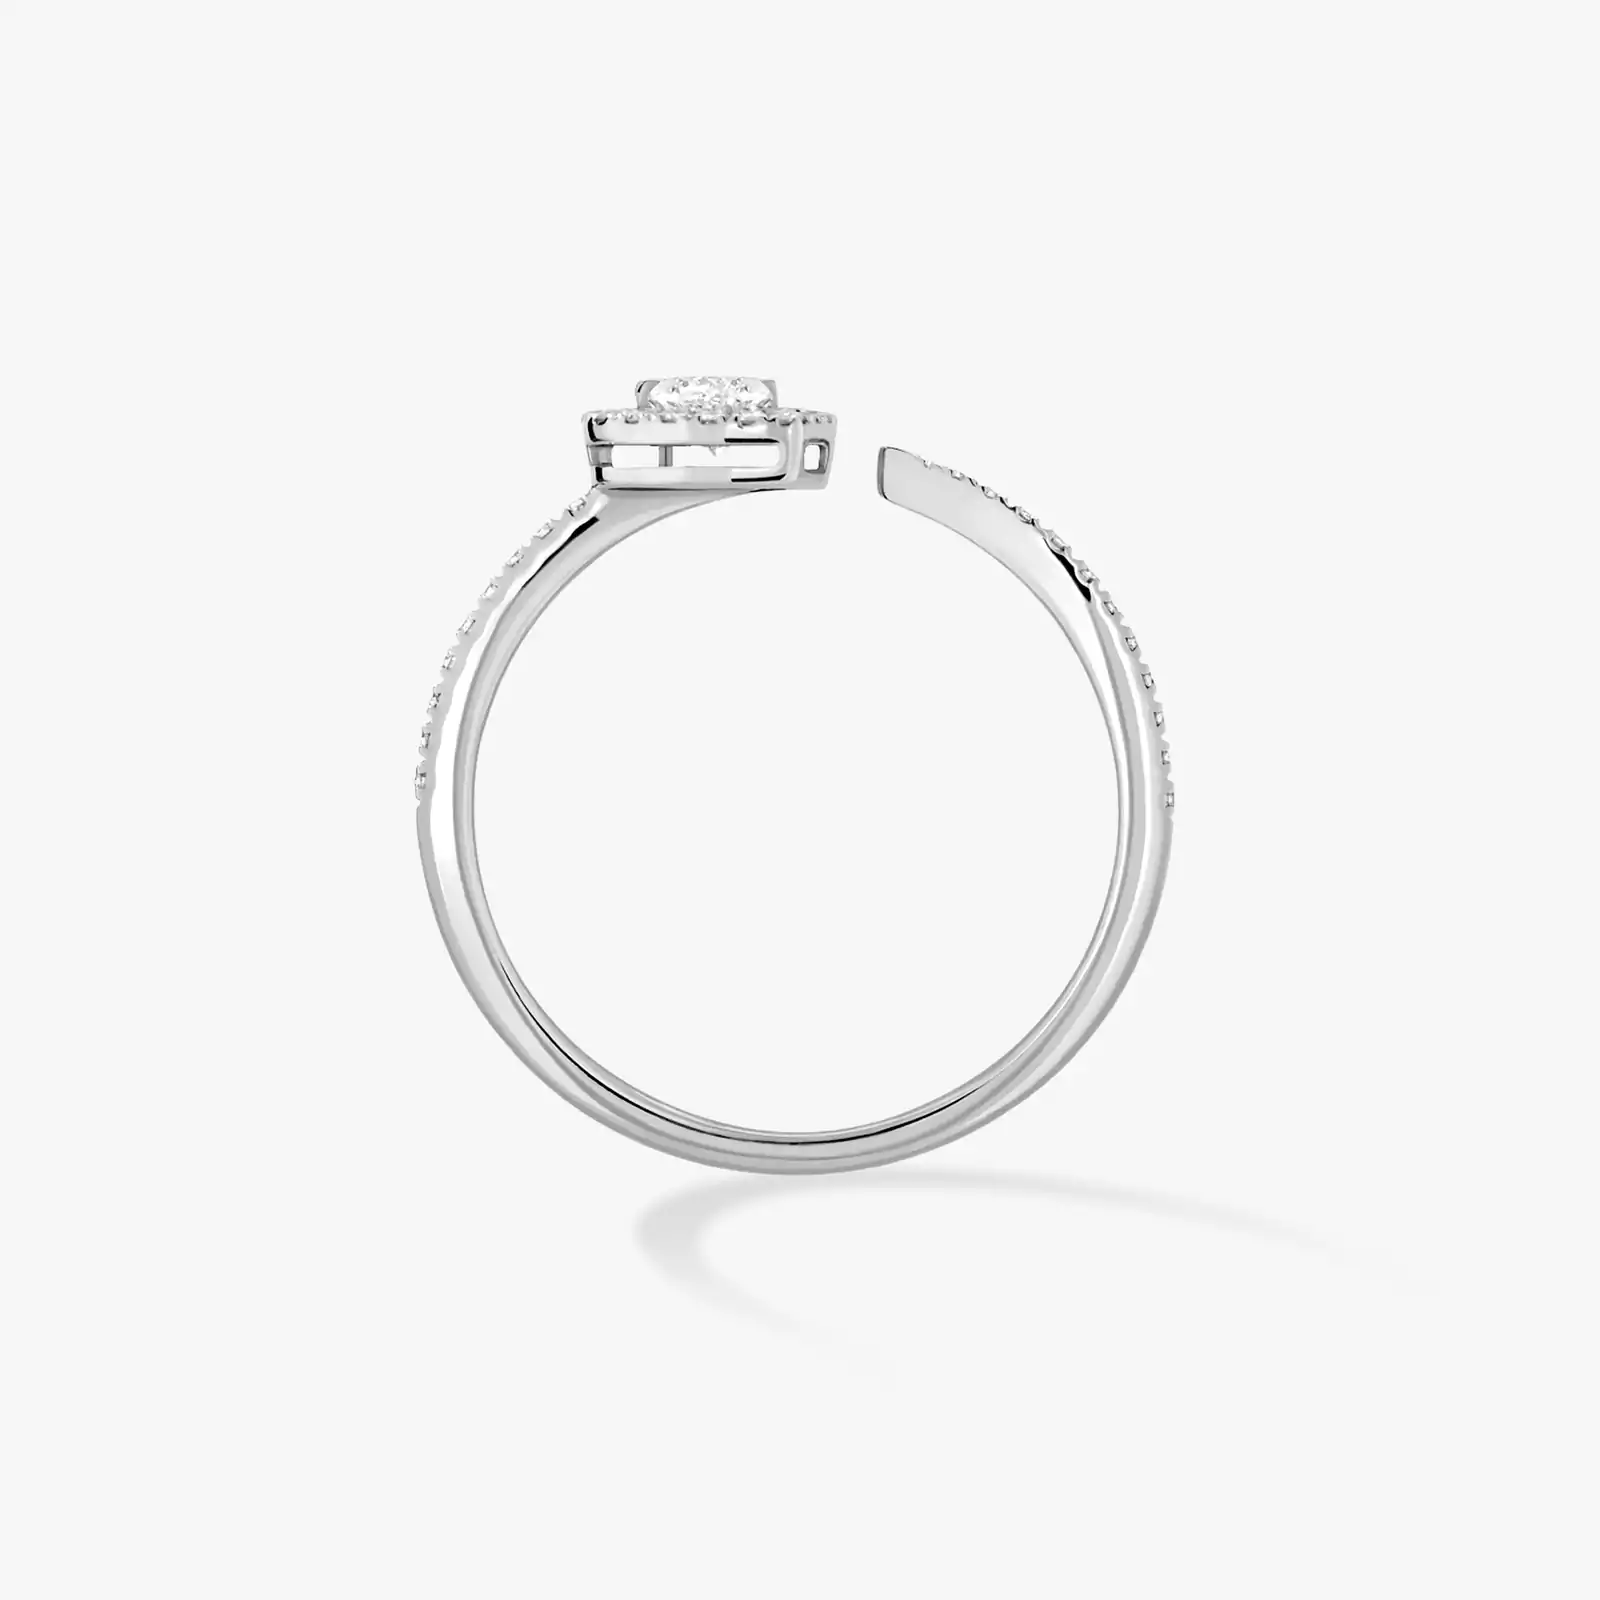 Bague Femme Or Blanc Diamant Joy diamant cœur pavée 0,15ct 11438-WG